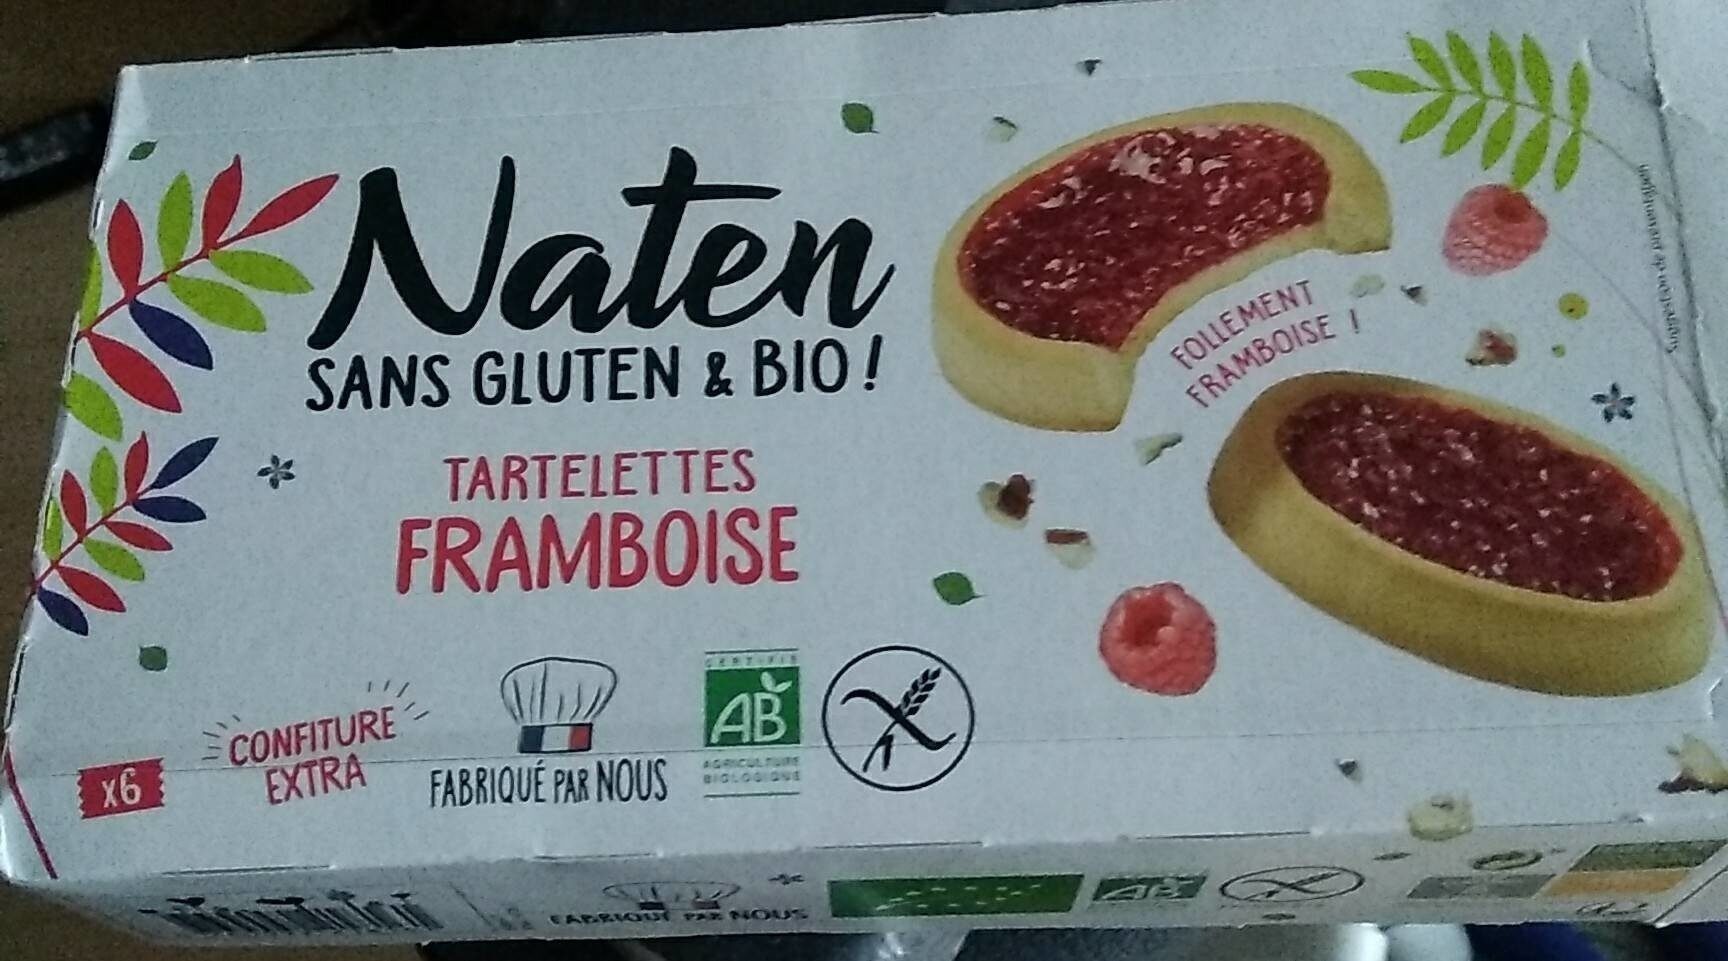 Tartelettes FRAMBOISE - Product - fr